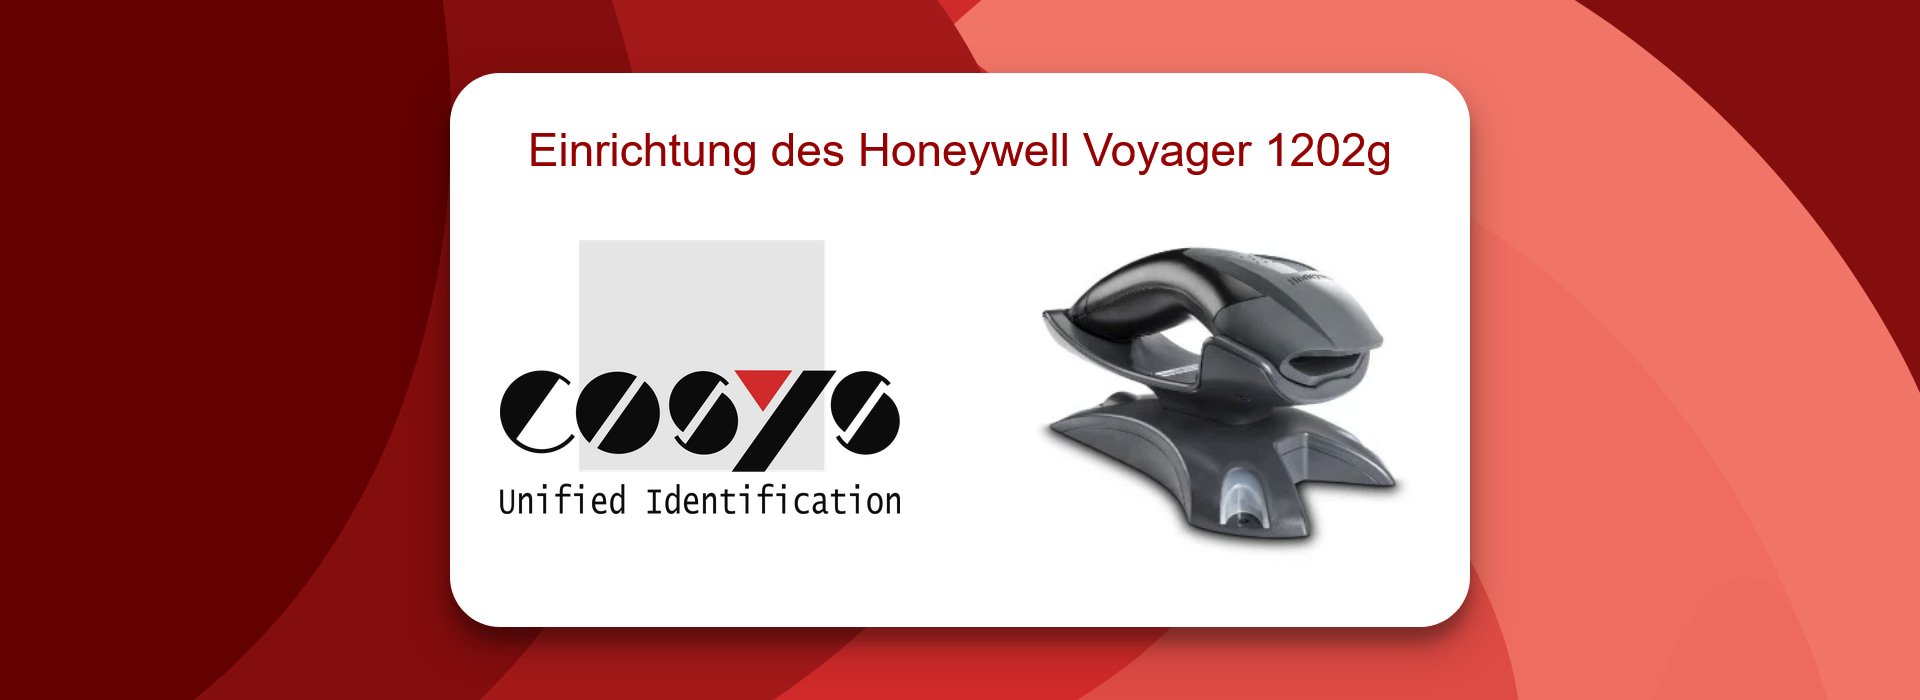 Einrichtung des Honeywell Voyager 1202g